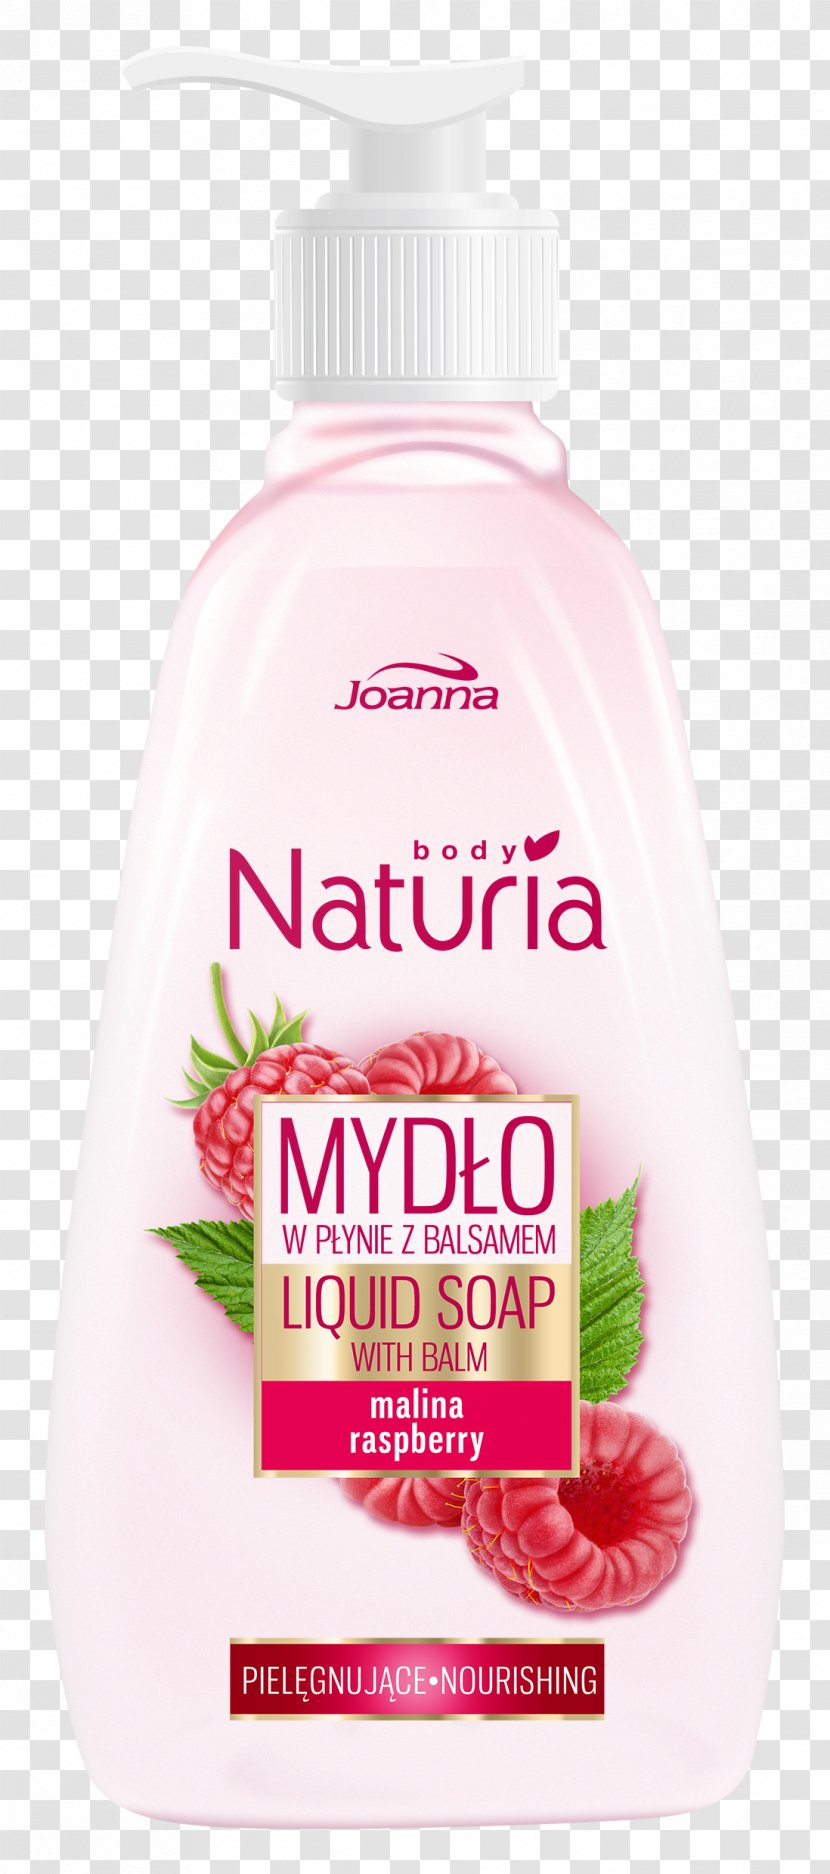 Lotion Krem Skin Liquid Soap - Design Transparent PNG